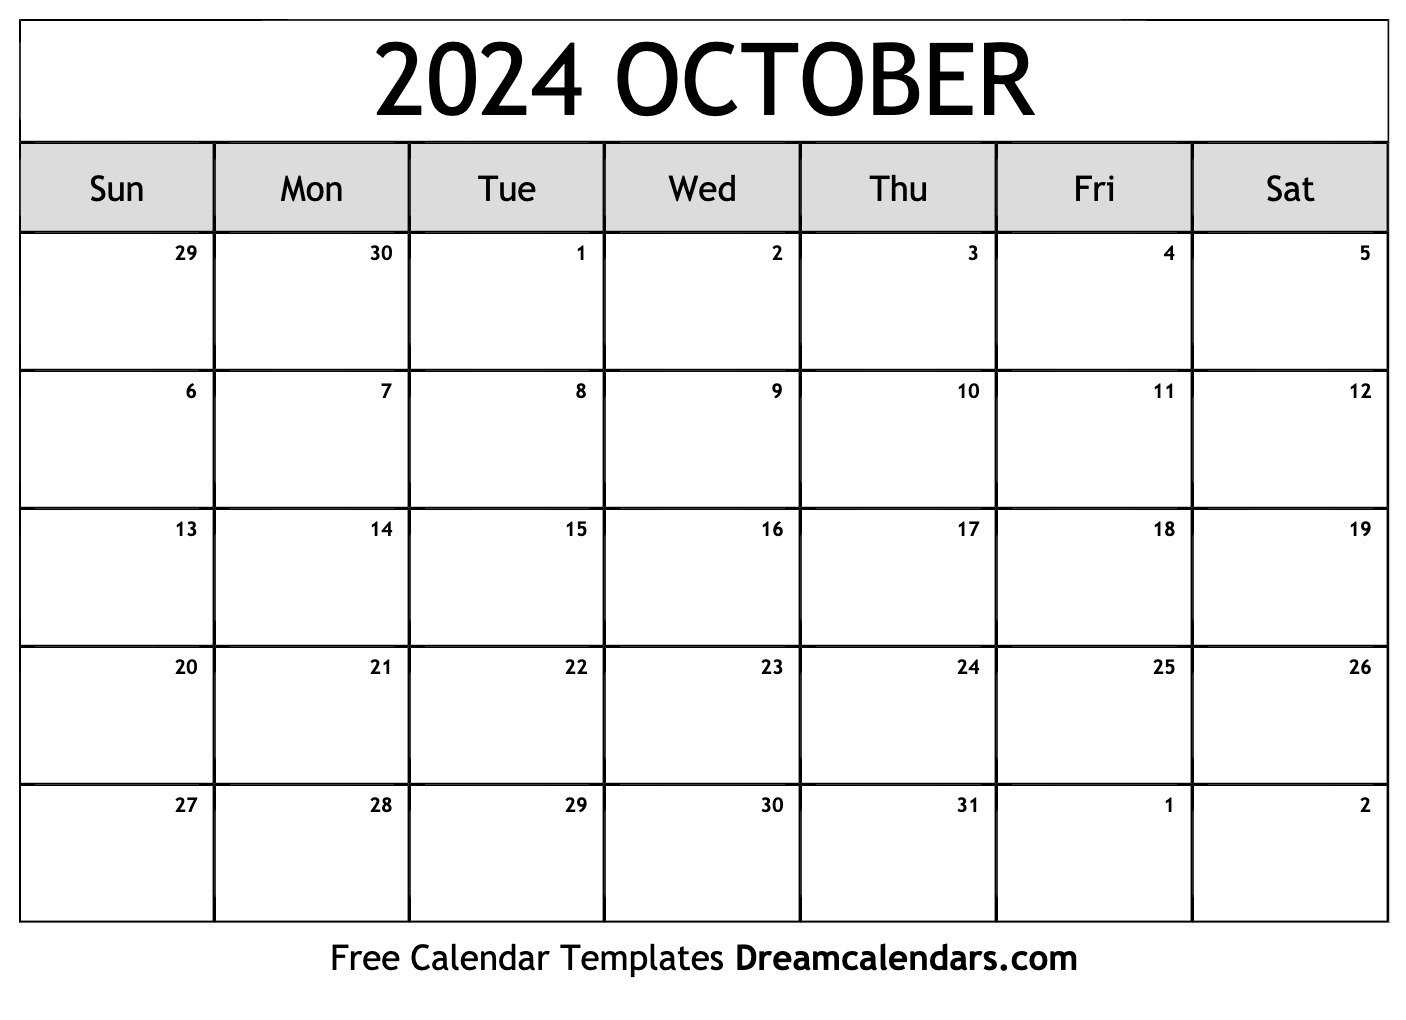 Calendar 2024 October Printable Barbe Carlita - Free Printable 2024 Calendar October November December 2024